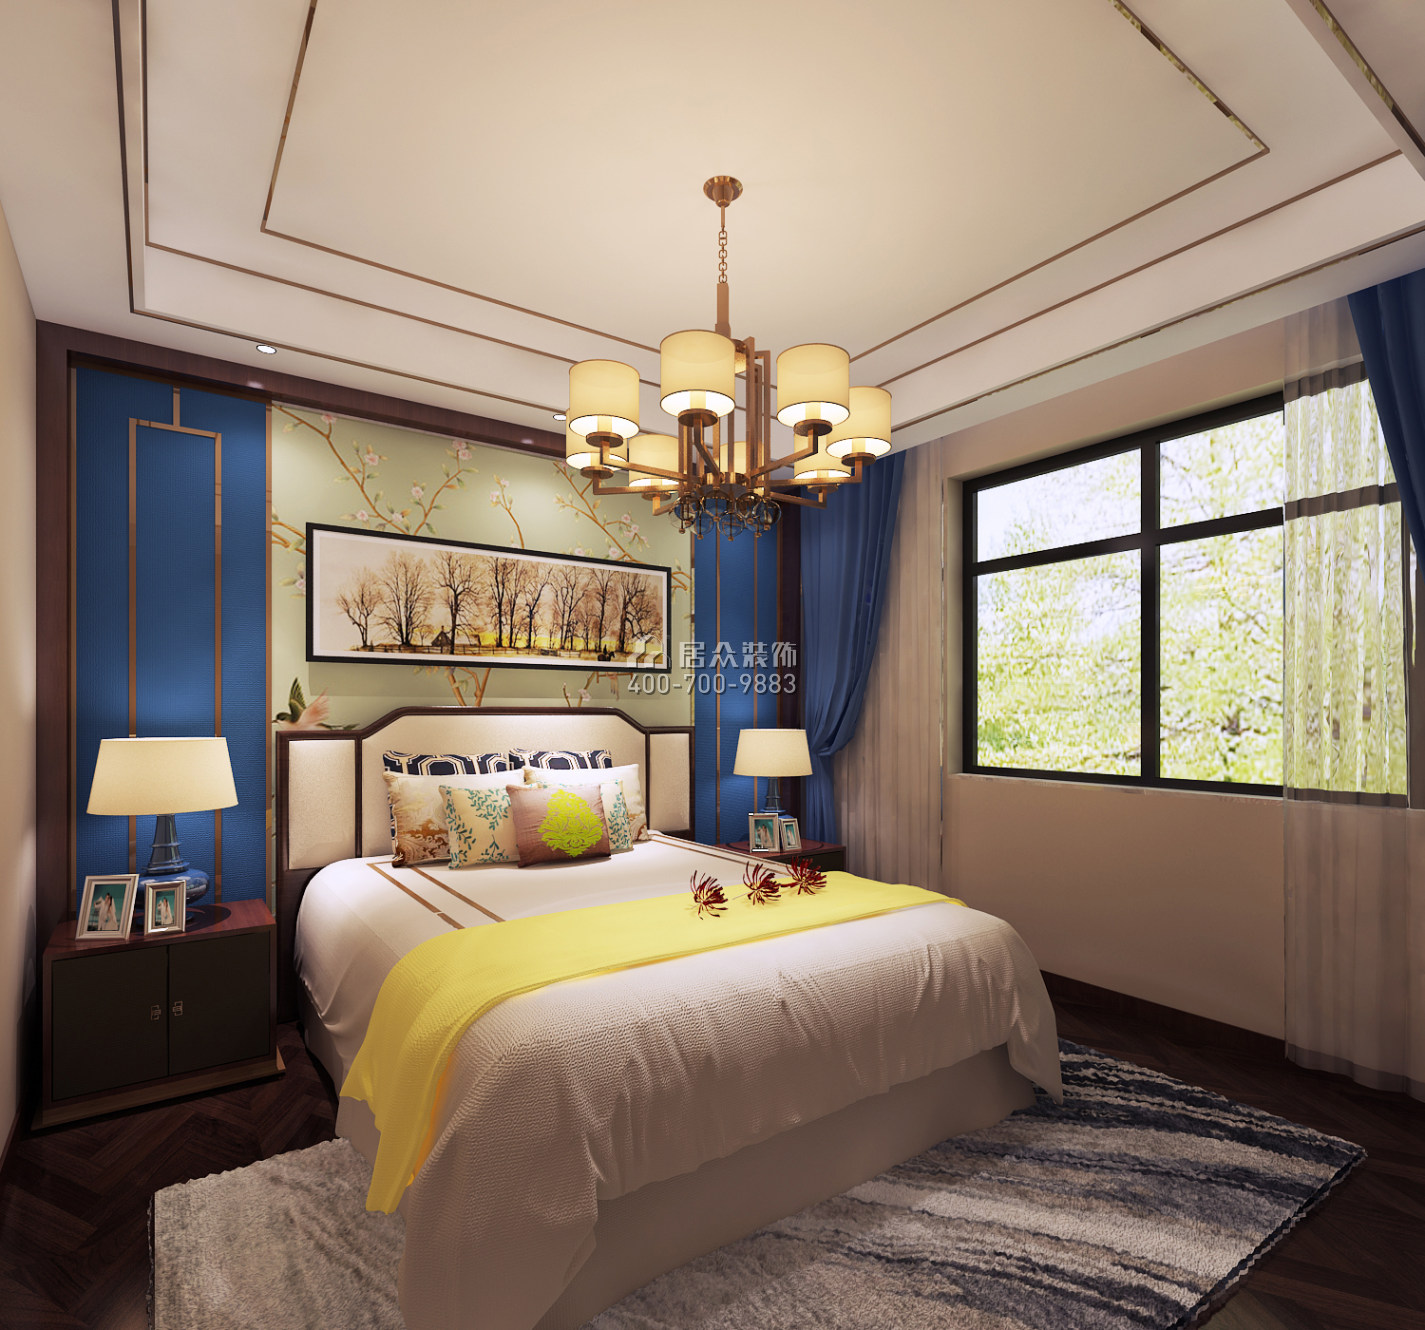 鲁能领秀城120平方米中式风格平层户型卧室装修效果图